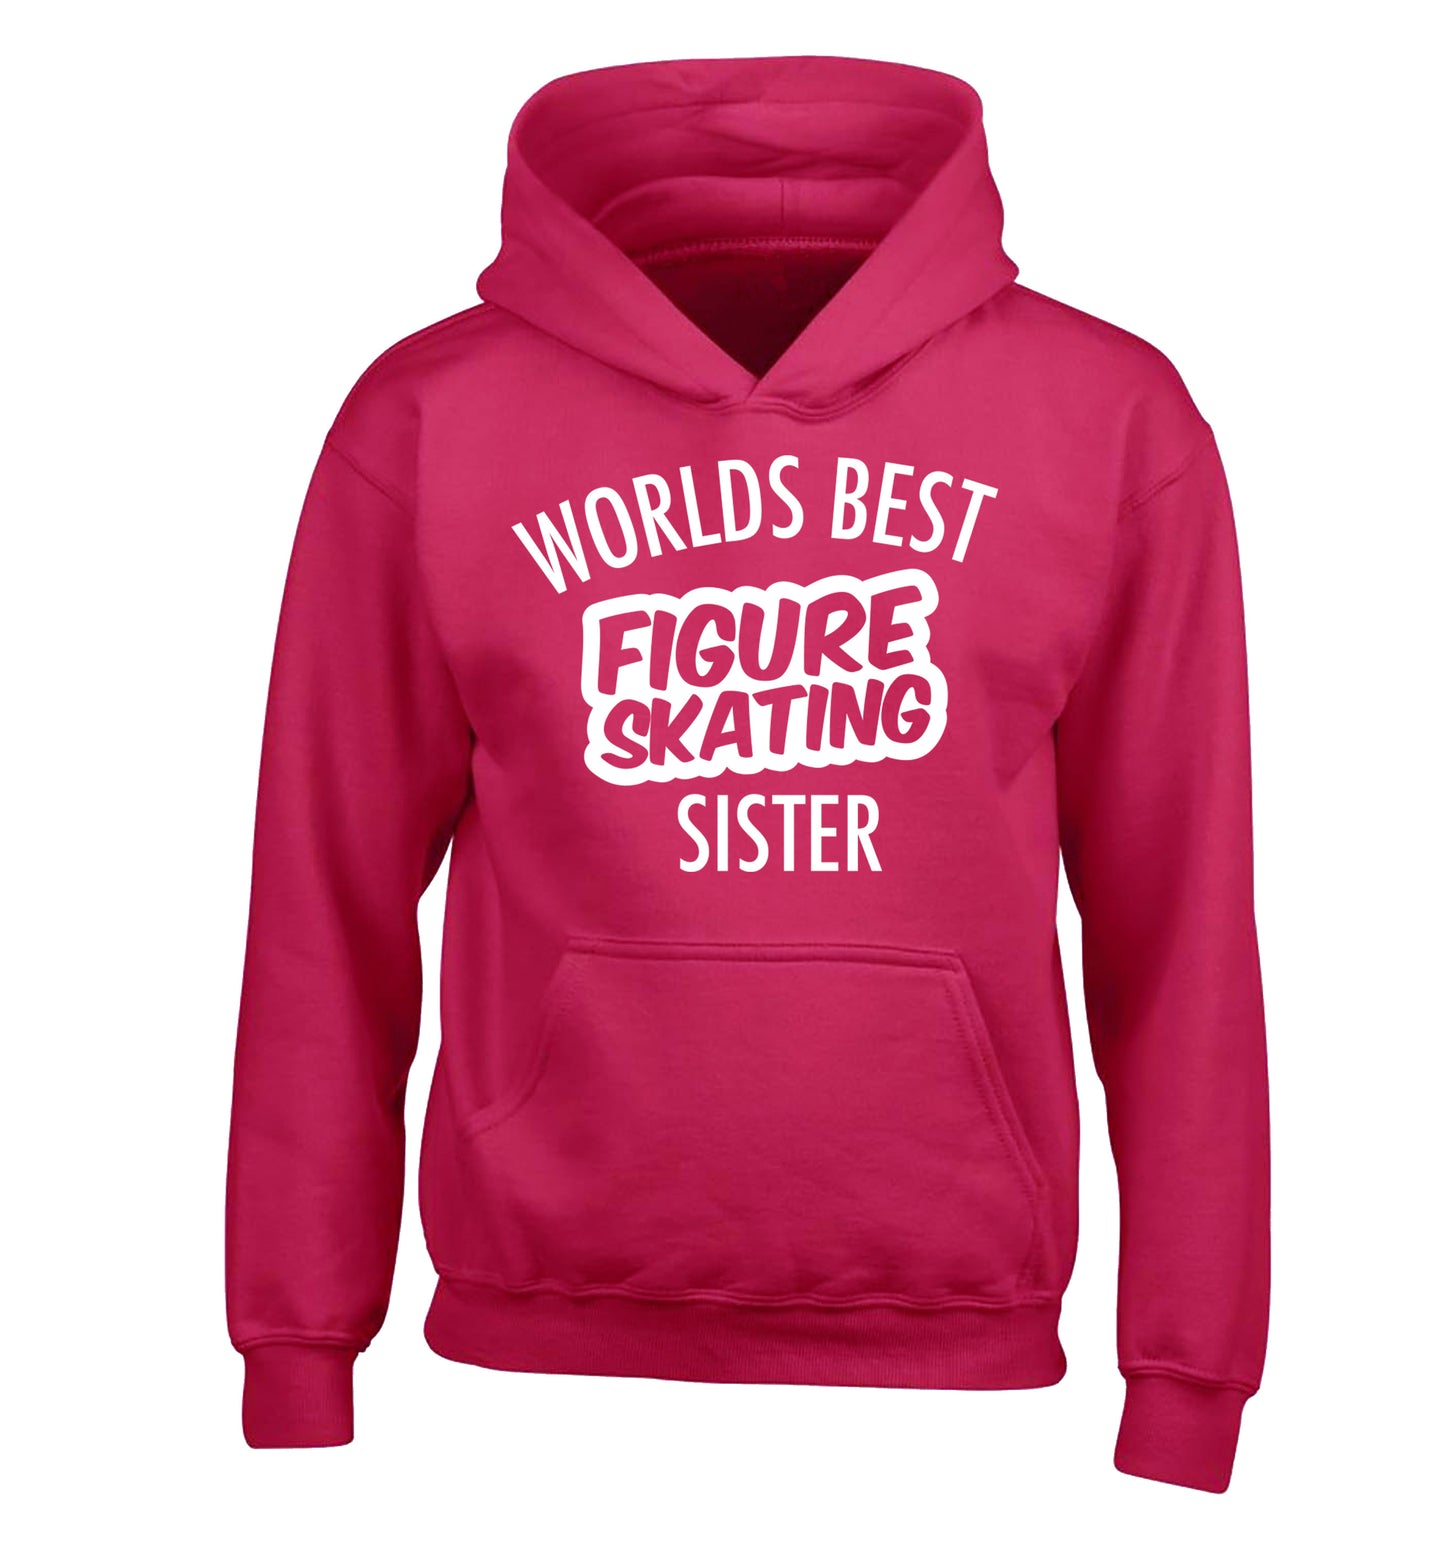 Worlds best figure skating sisterchildren's pink hoodie 12-14 Years